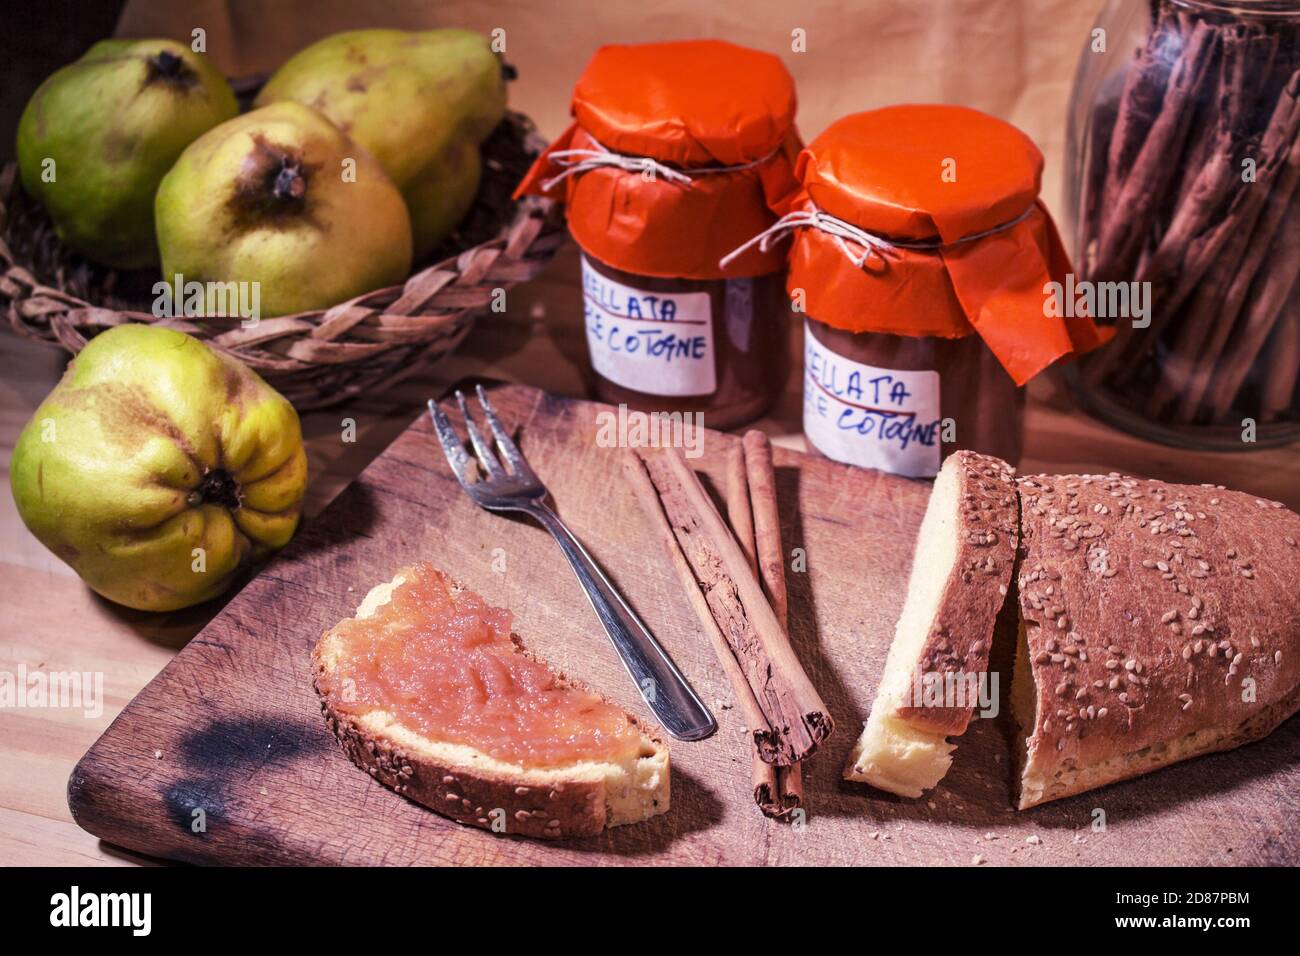 Fetta di pane con marmellata di mele cotogne fatta in casa, jar di marmellata e cesto con cotogne crude Foto Stock